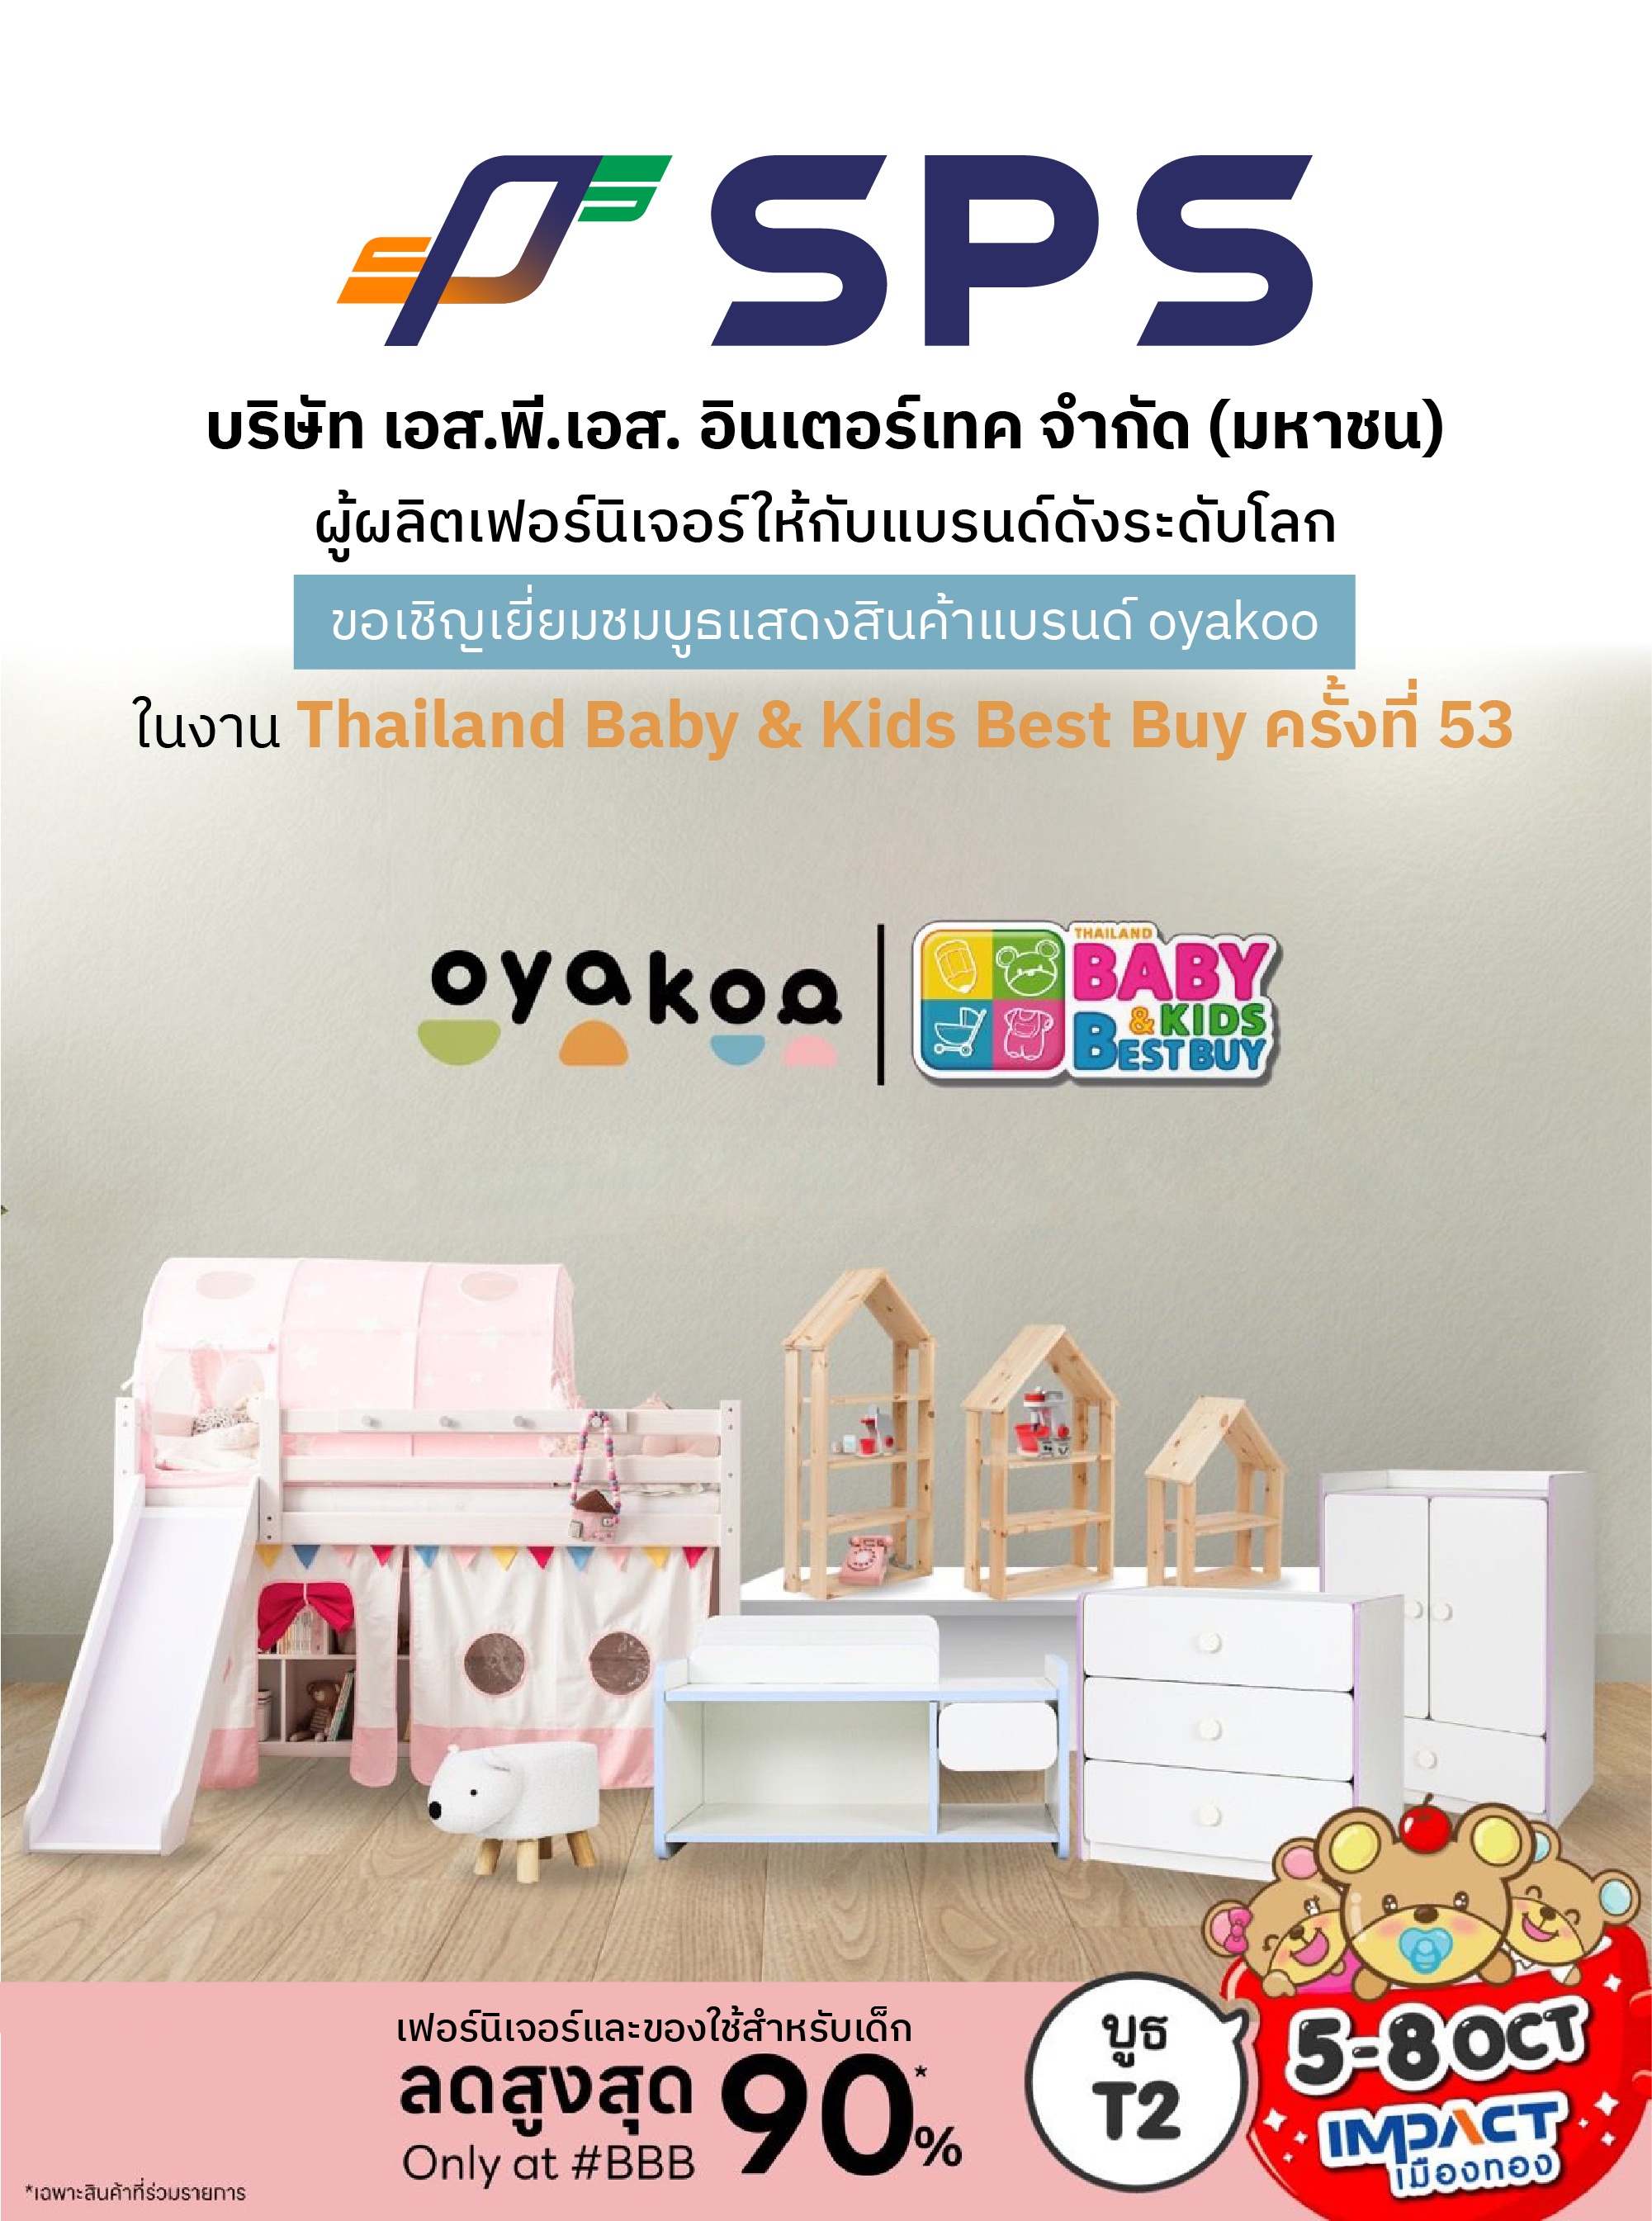 "บมจ.เอส.พี.เอส. อินเตอร์เทค หรือ SPS ขอเชิญเยี่ยมชมบูธแสดงสินค้าแบรนด์ oyakoo เฟอร์นิเจอร์และของใช้สำหรับเด็ก ในงาน Thailand Baby & Kids Best Buy ครั้งที่ 53 ณ บูธ T2-T3 IMPACT Hall 3"